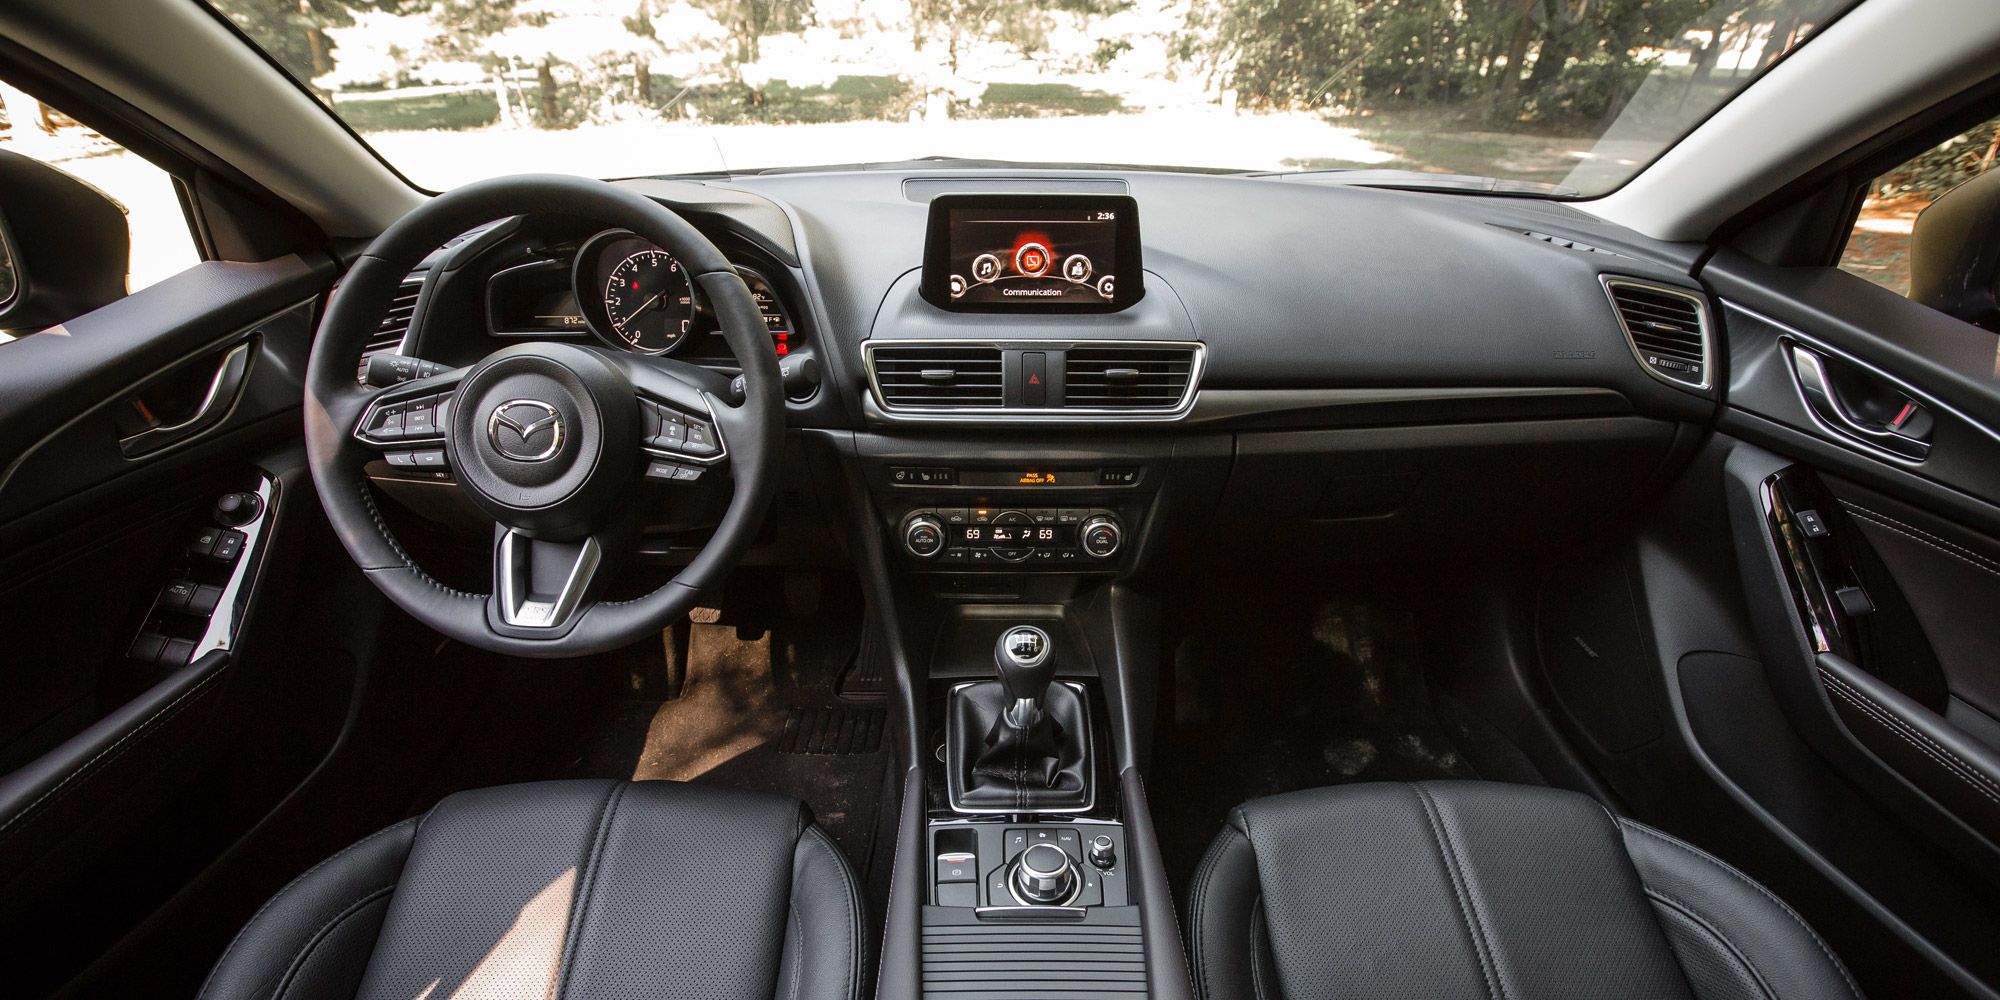 Mazda3 Interior Photos - Best Car Interior for $30,000